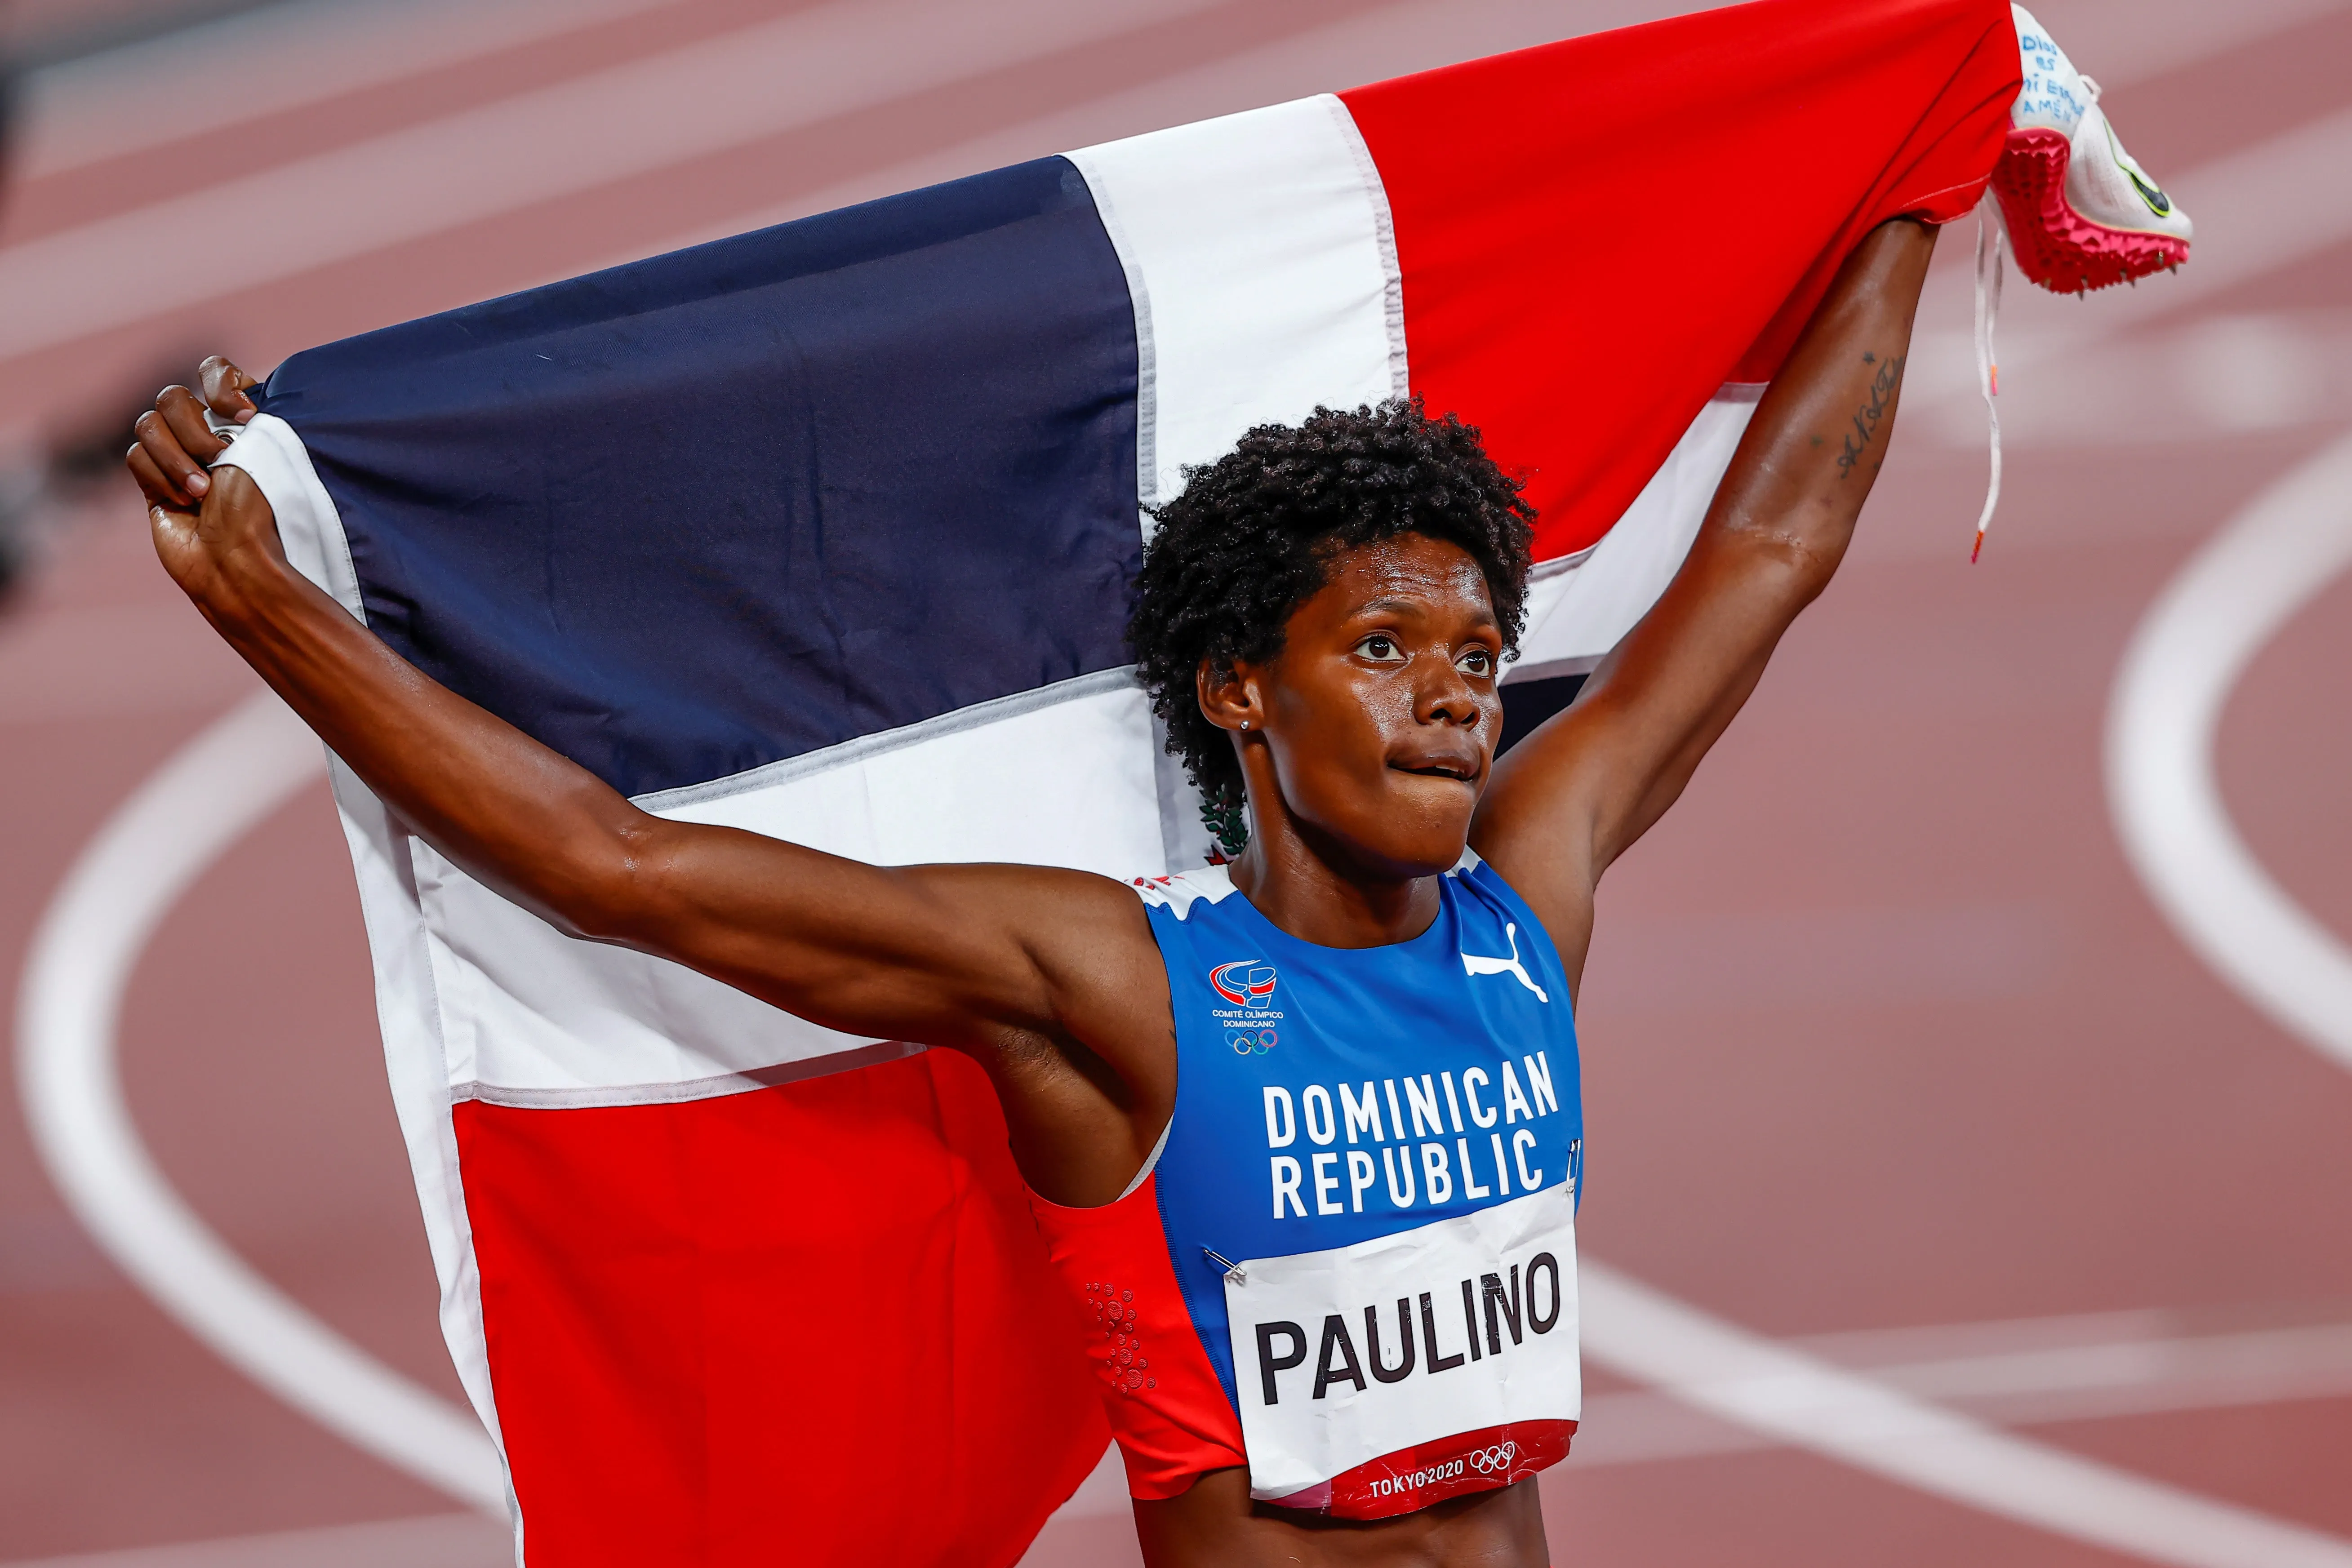 Marileidy Paulino, la dominicana que mantuvo en alto la bandera que brilló en Tokio 2020